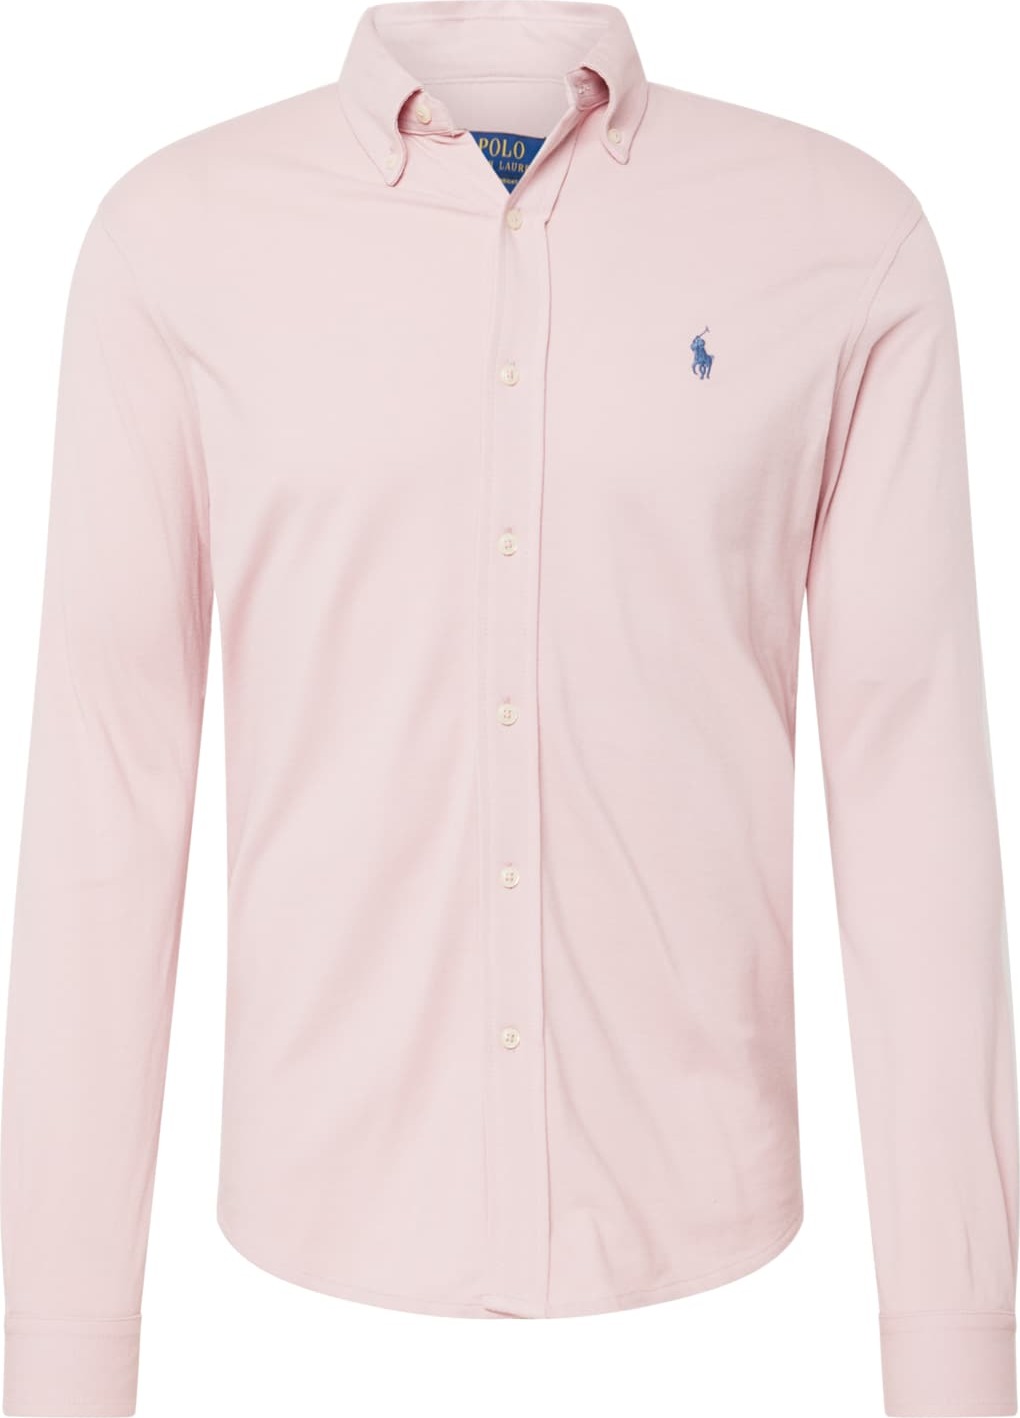 Košile Polo Ralph Lauren nebeská modř / růžová